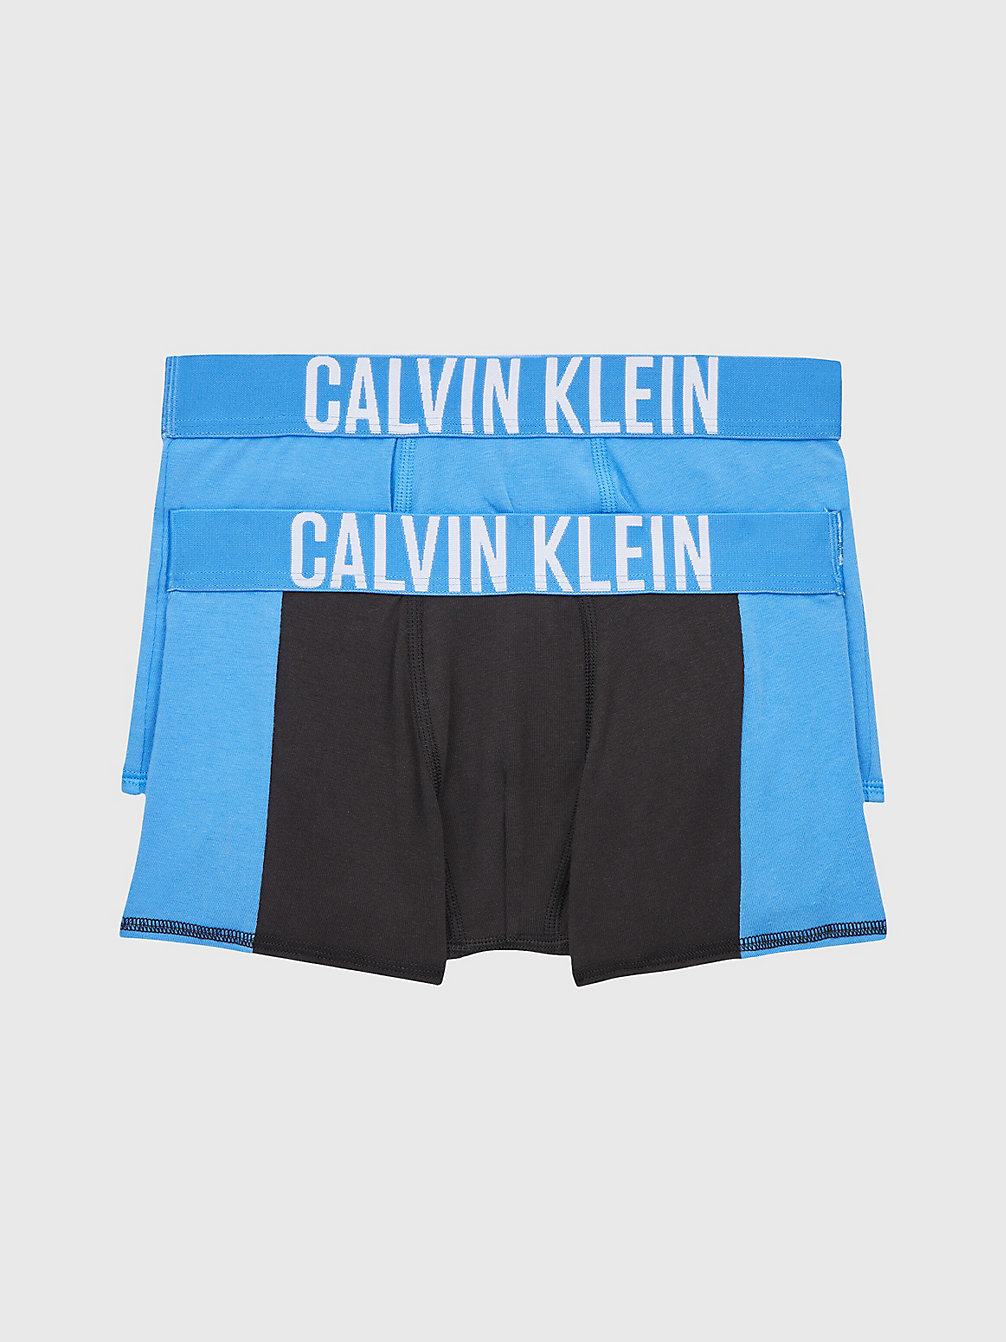 ELECTRICAQUA/PVHBLACK Lot De 2 Boxers Pour Garçon - Intense Power undefined garcons Calvin Klein